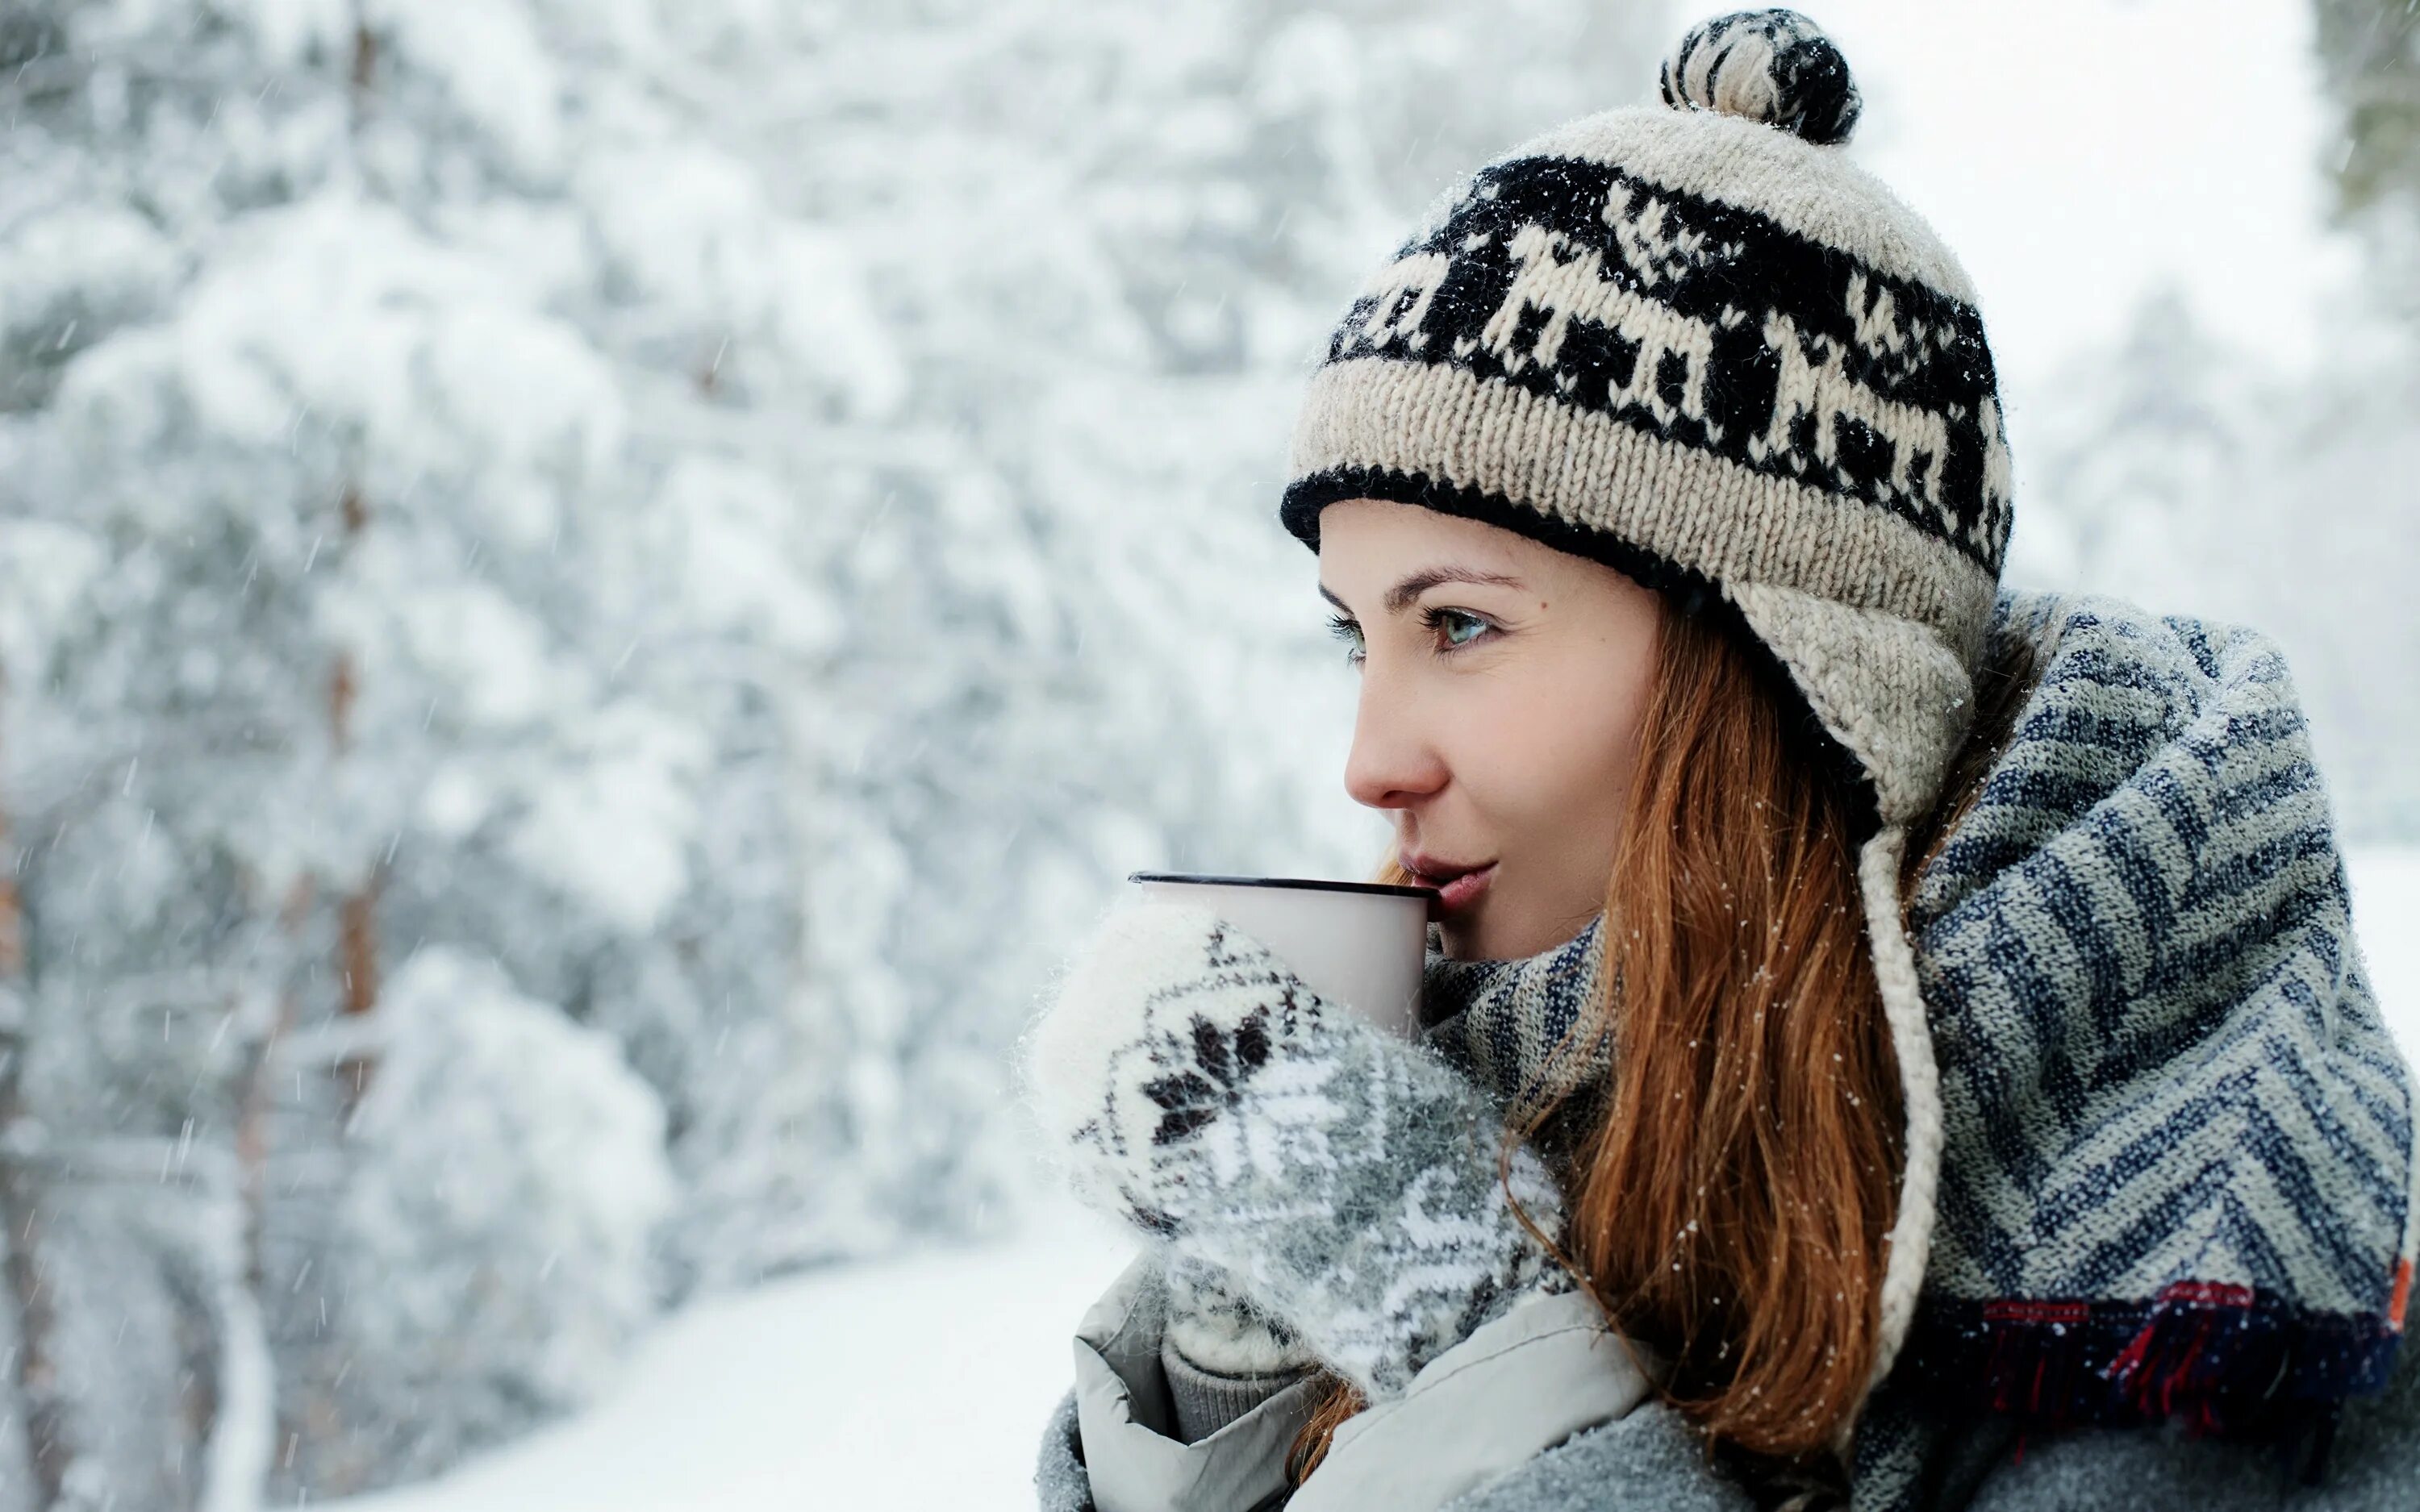 Зимняя фотосессия в лесу. Девушка в шапке. Девушка пьет чай зимой. Девушка в шапке зимой. Было также холодно